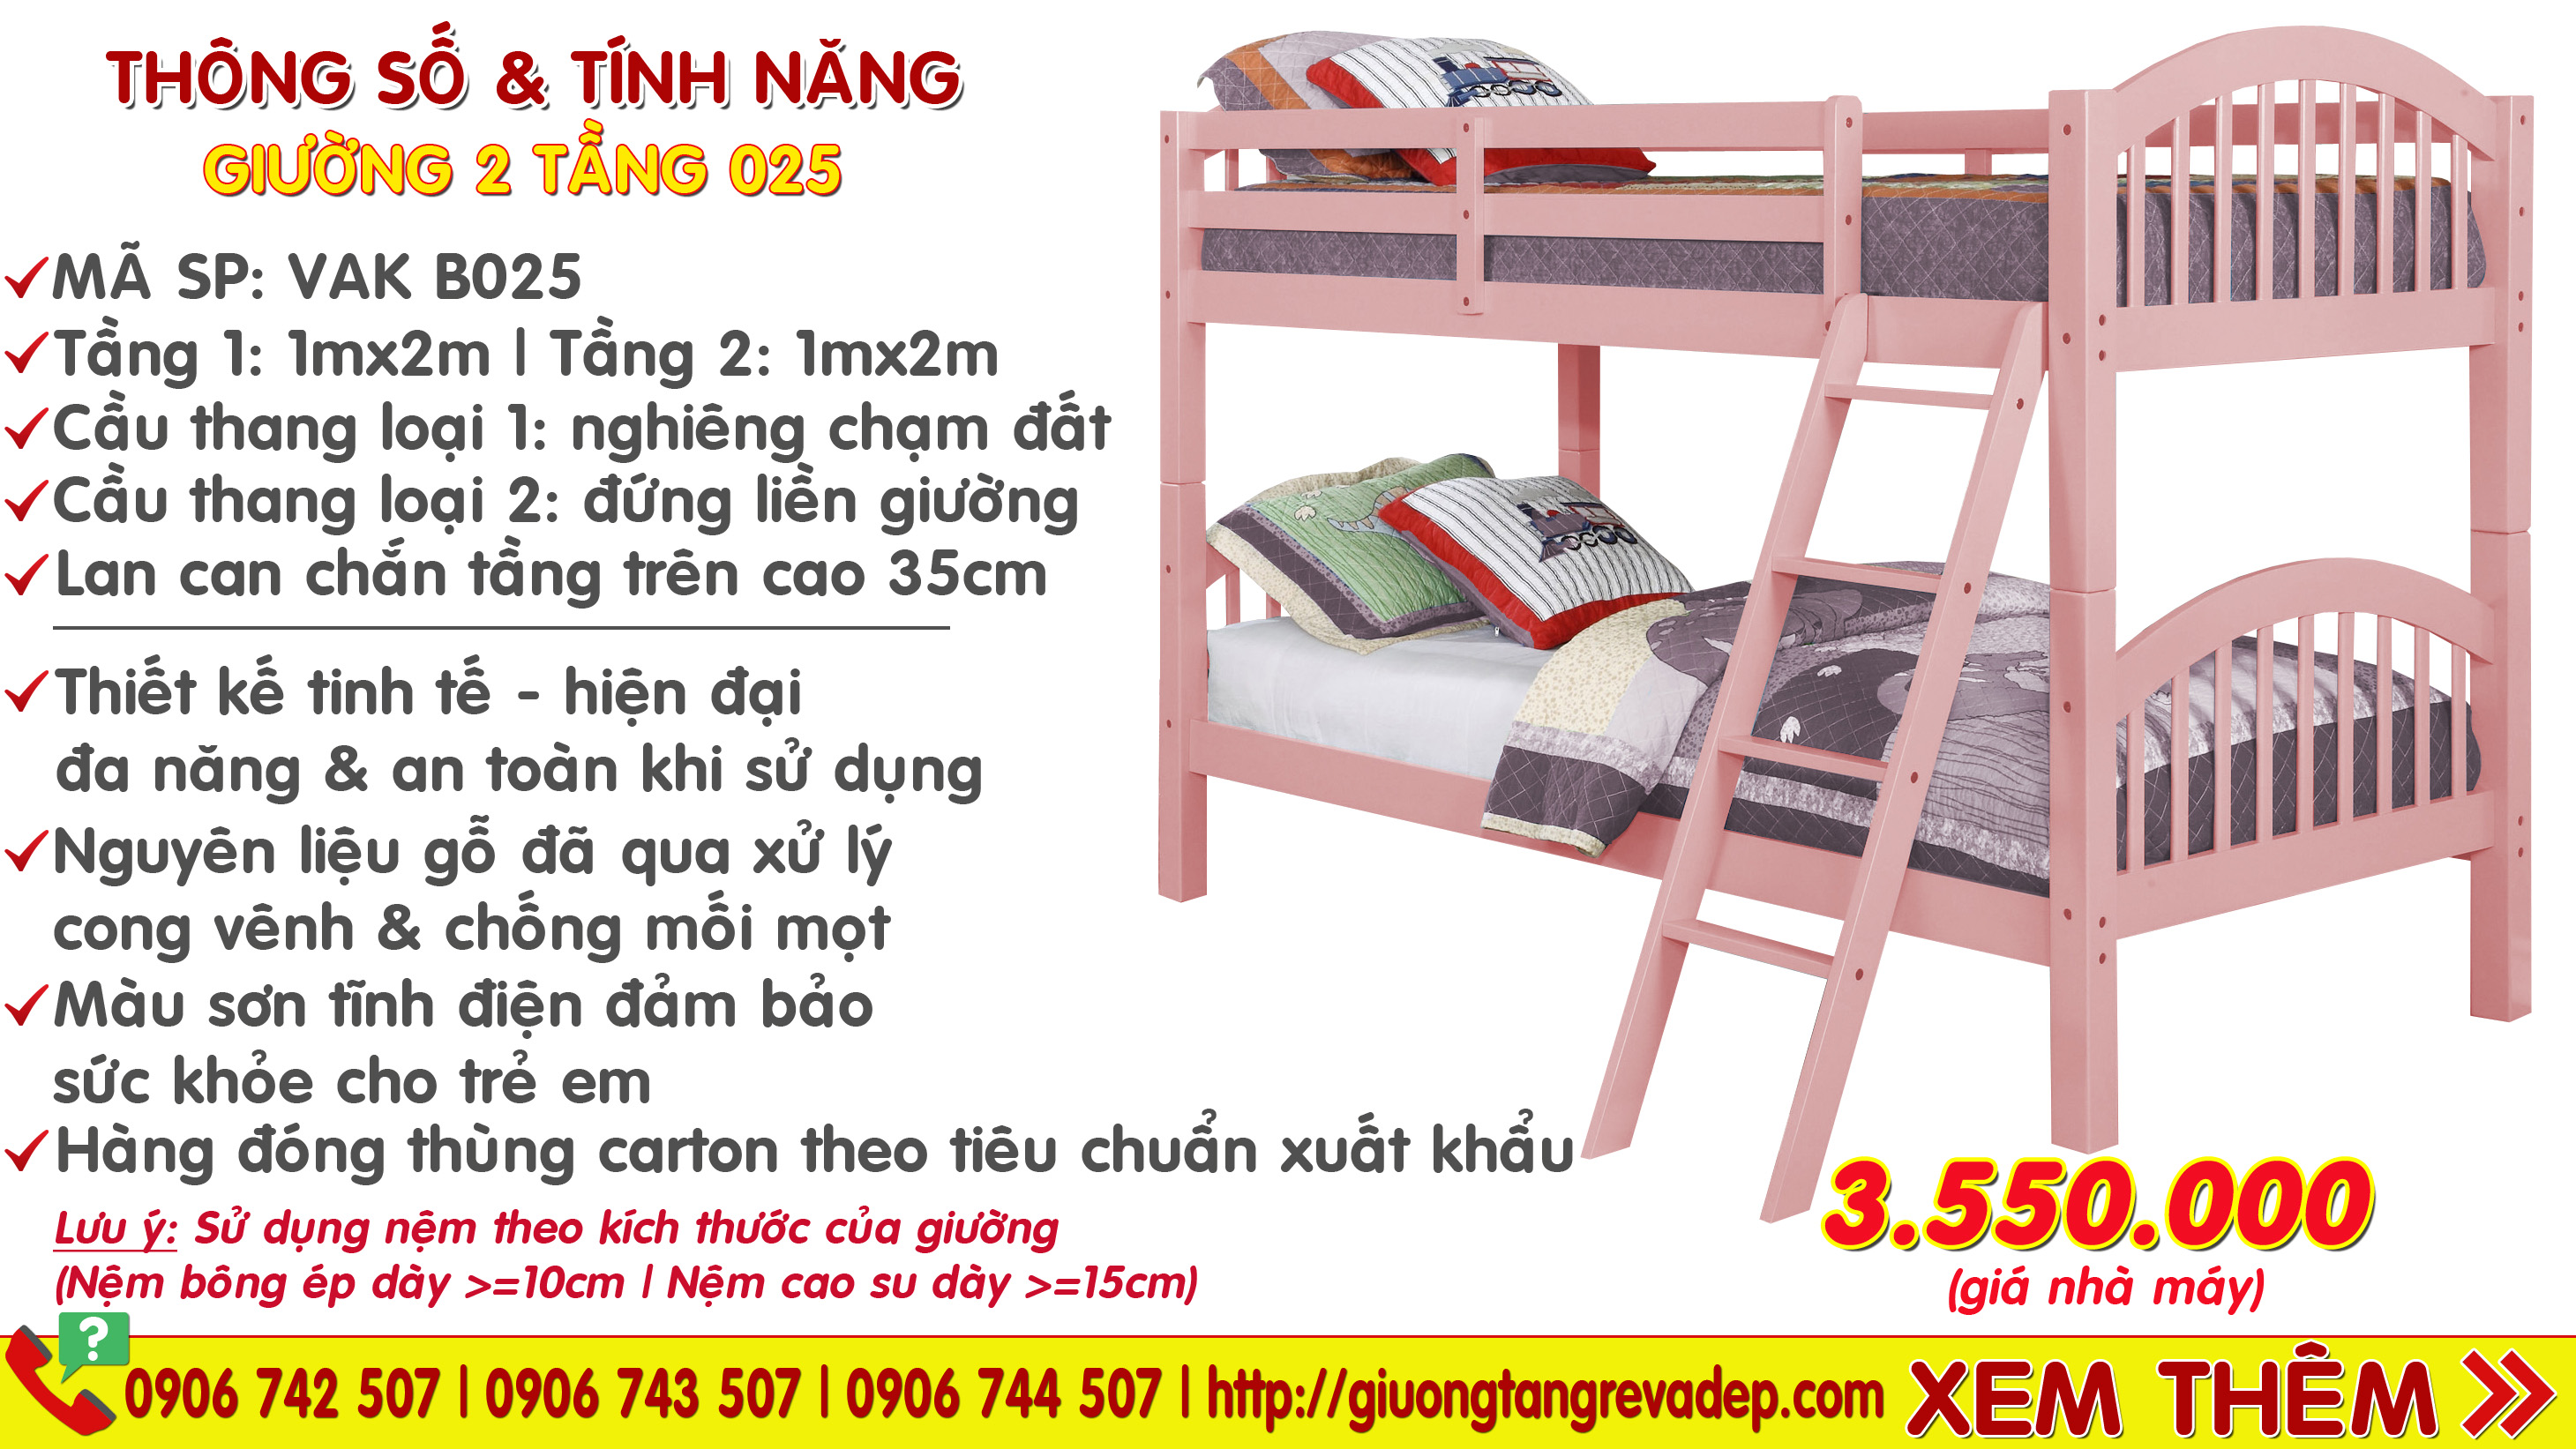 Giường tầng trẻ em giá rẻ và đẹp cạnh tranh nhất thị trường Việt Nam 2014